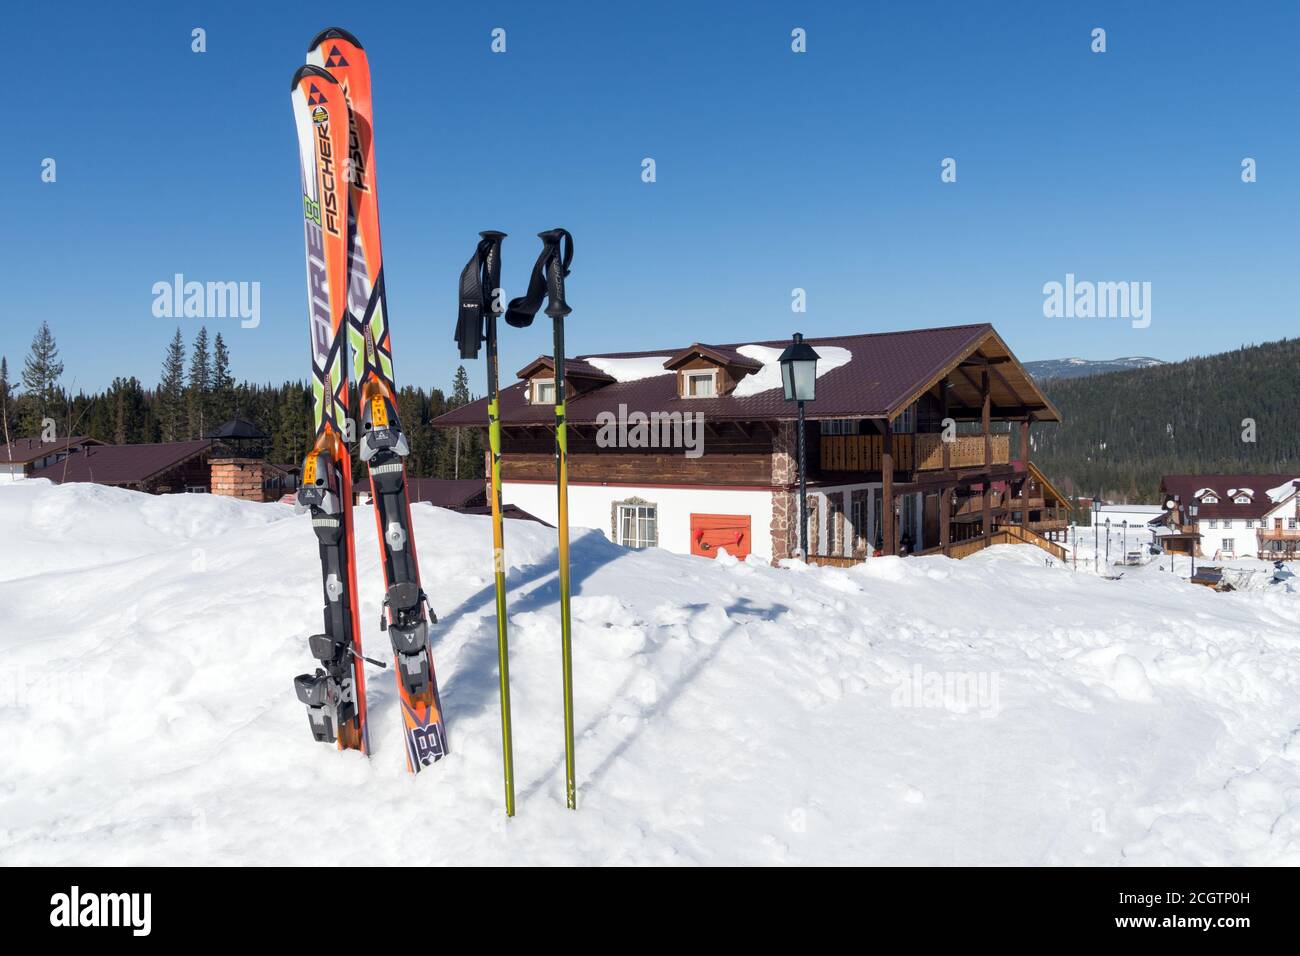 Lo sci alpino con bastoni si trova in una deriva bianca sullo sfondo della casetta svizzera. Foto Stock